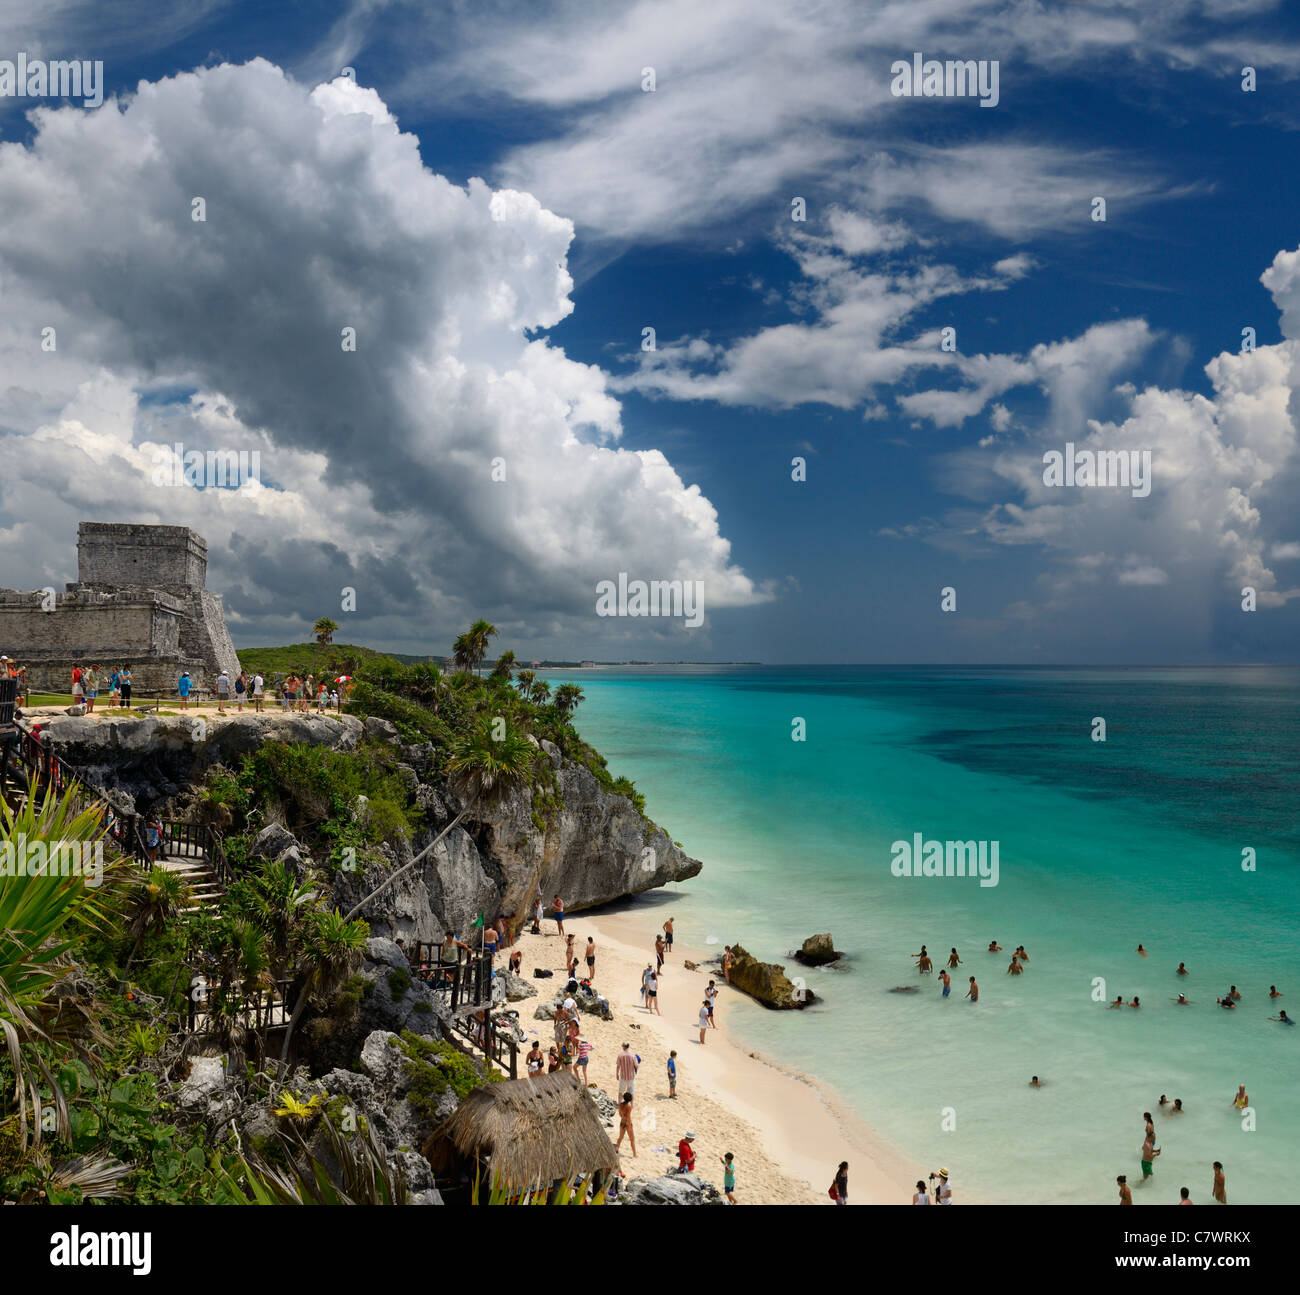 La pyramide château ruine à Tulum mexico avec Sea Cliff et plage de sable fin avec l'entrée d'swimers Riviera Maya yucatan caraïbes Banque D'Images